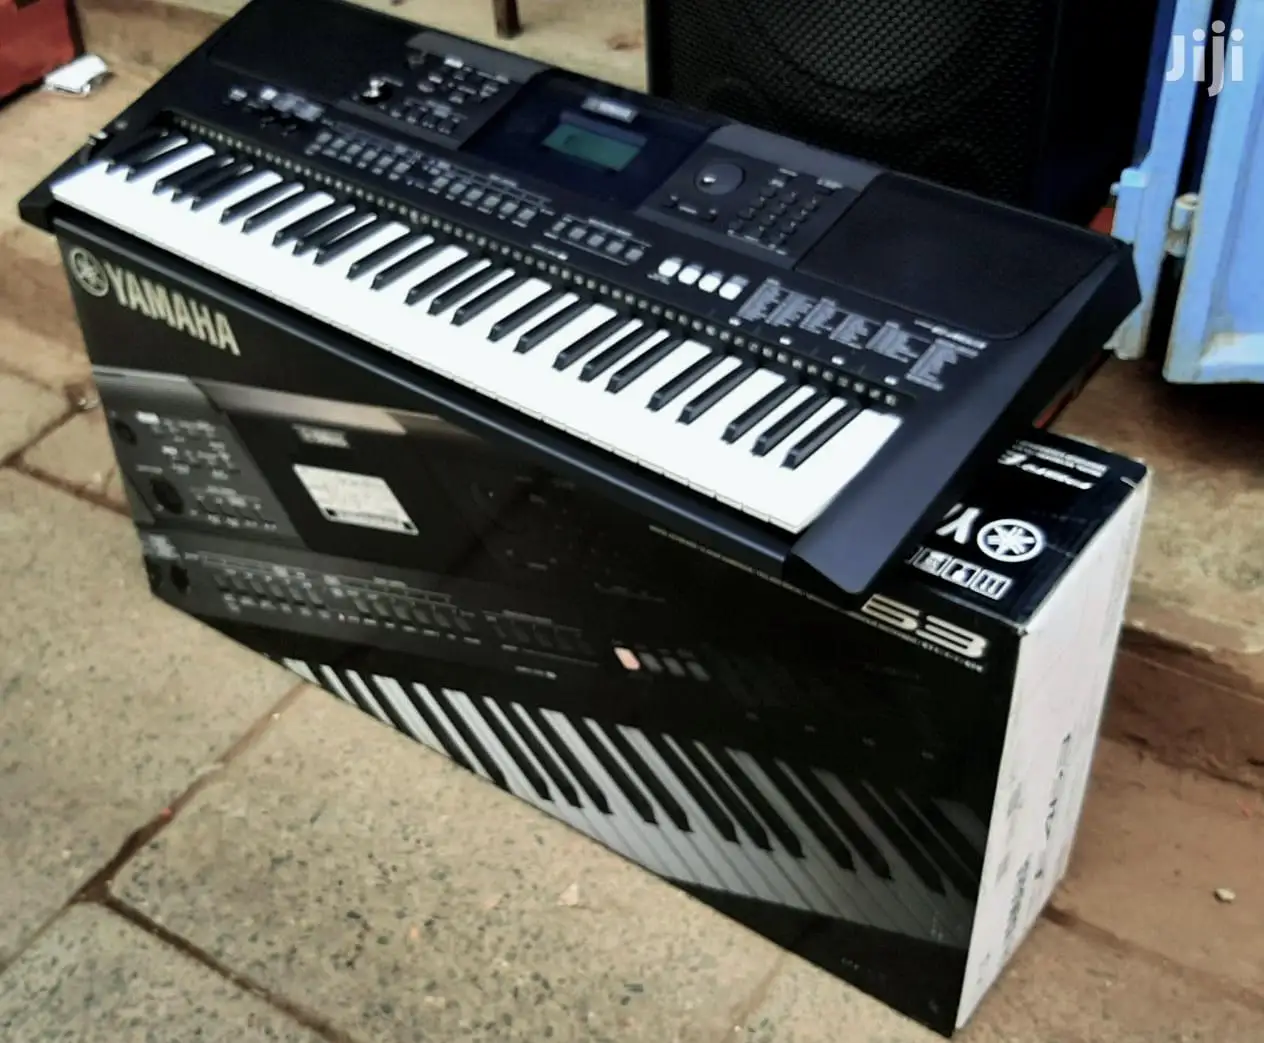 מכירות הקיץ הנחה על יוקרה אותנטית מוטיב XF8 88 מפתח פסנתר, סינתיסייזר מקלדת תחנת עבודה יסודות צרור w - 3